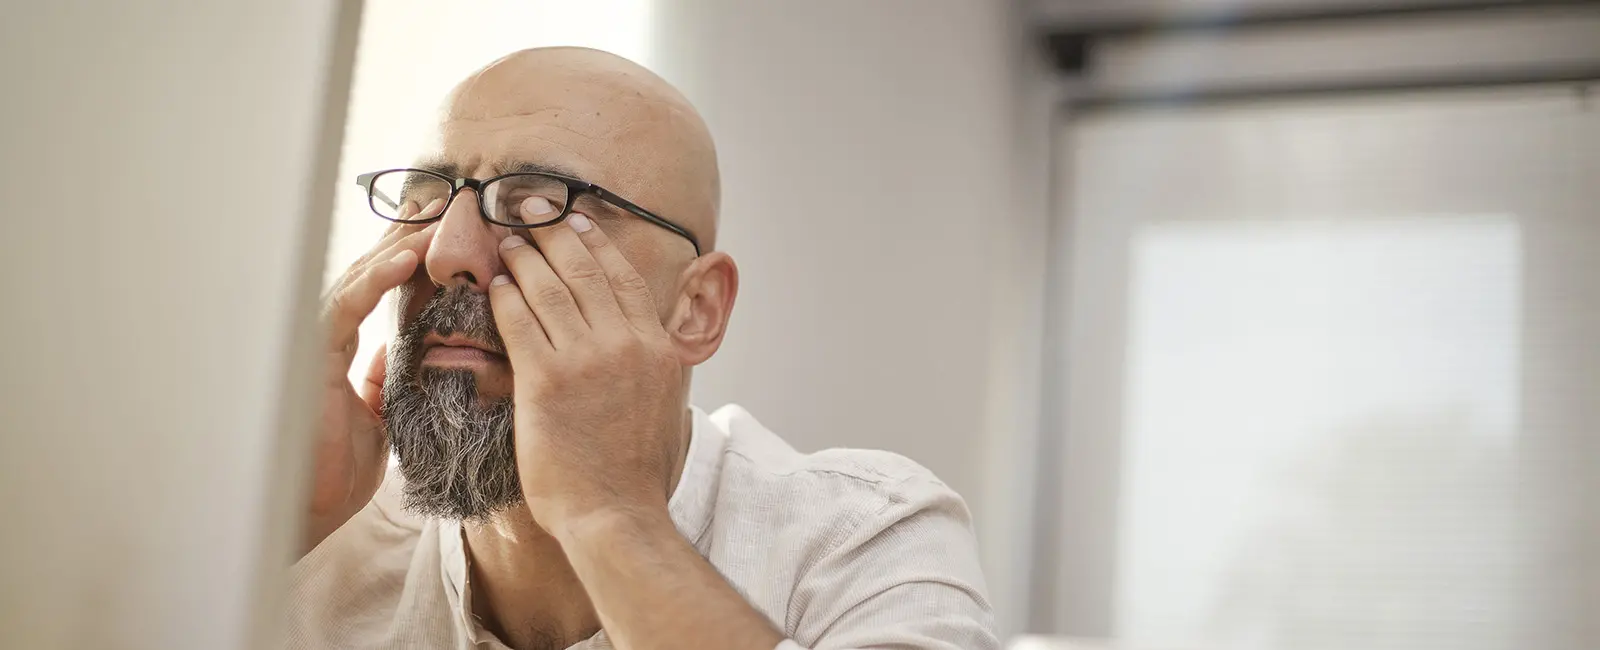 5 Simple Tips for Avoiding Digital Eye Strain at the Office